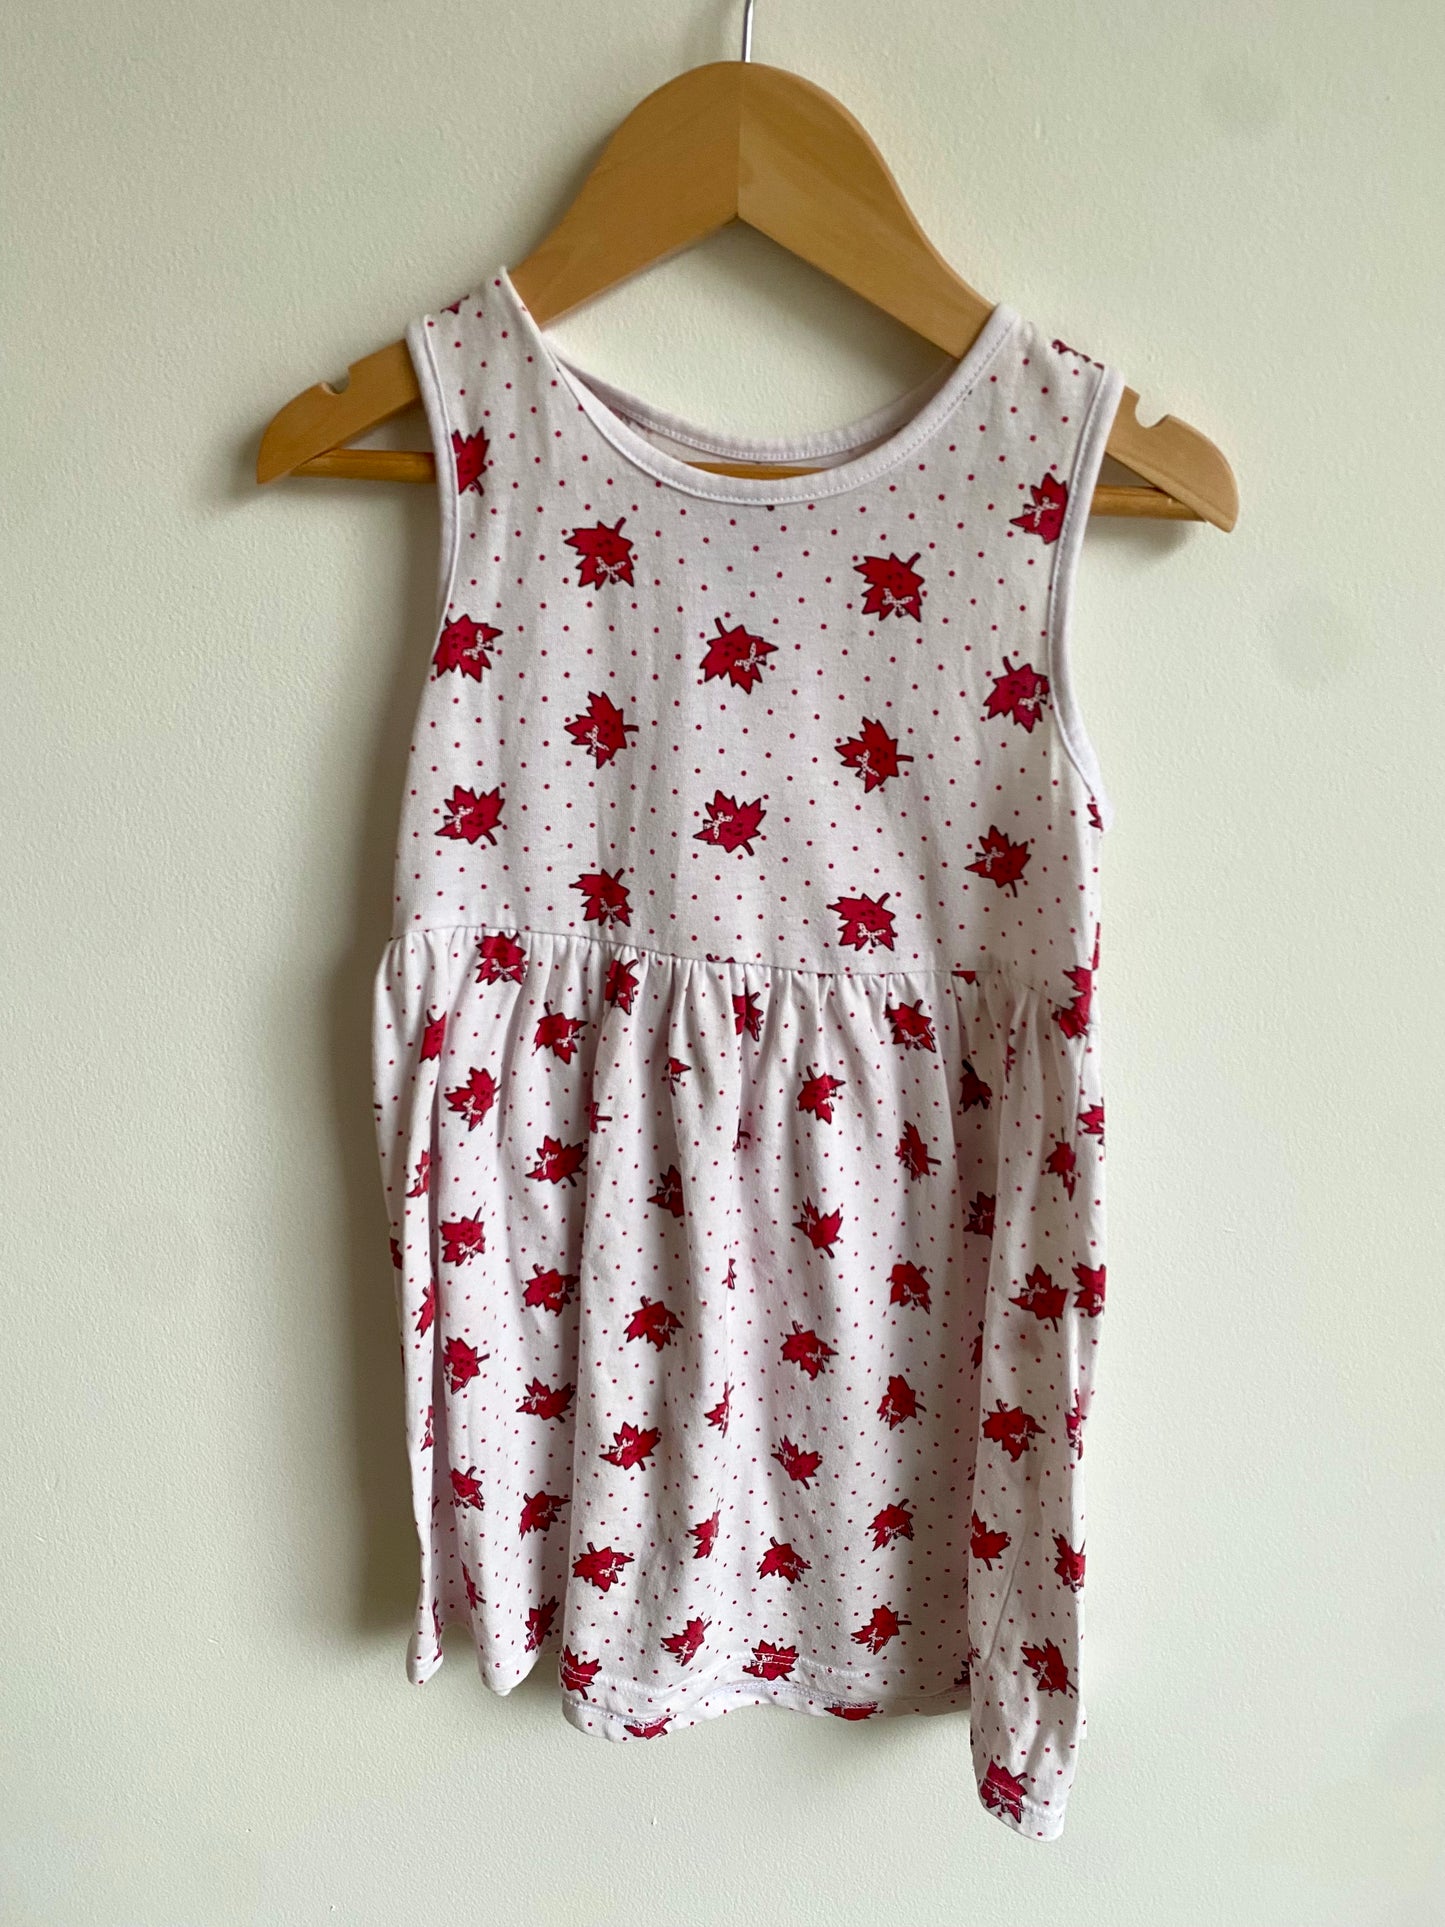 Maple Pattern Dress / 4T